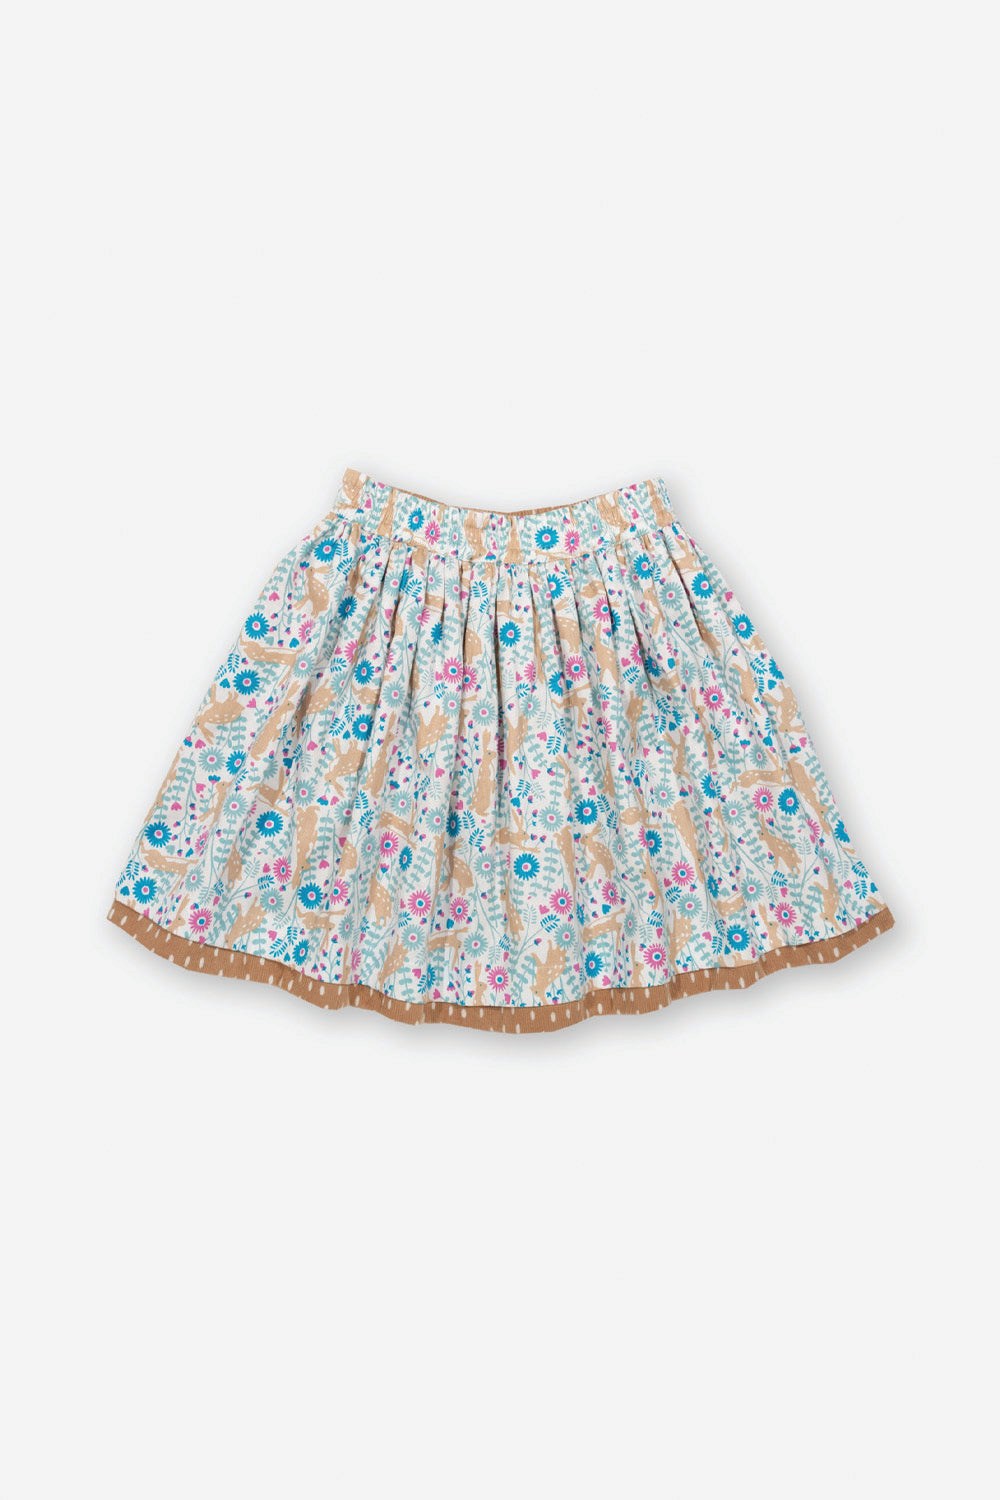 Speckle Hare Kids Reversible Skirt -